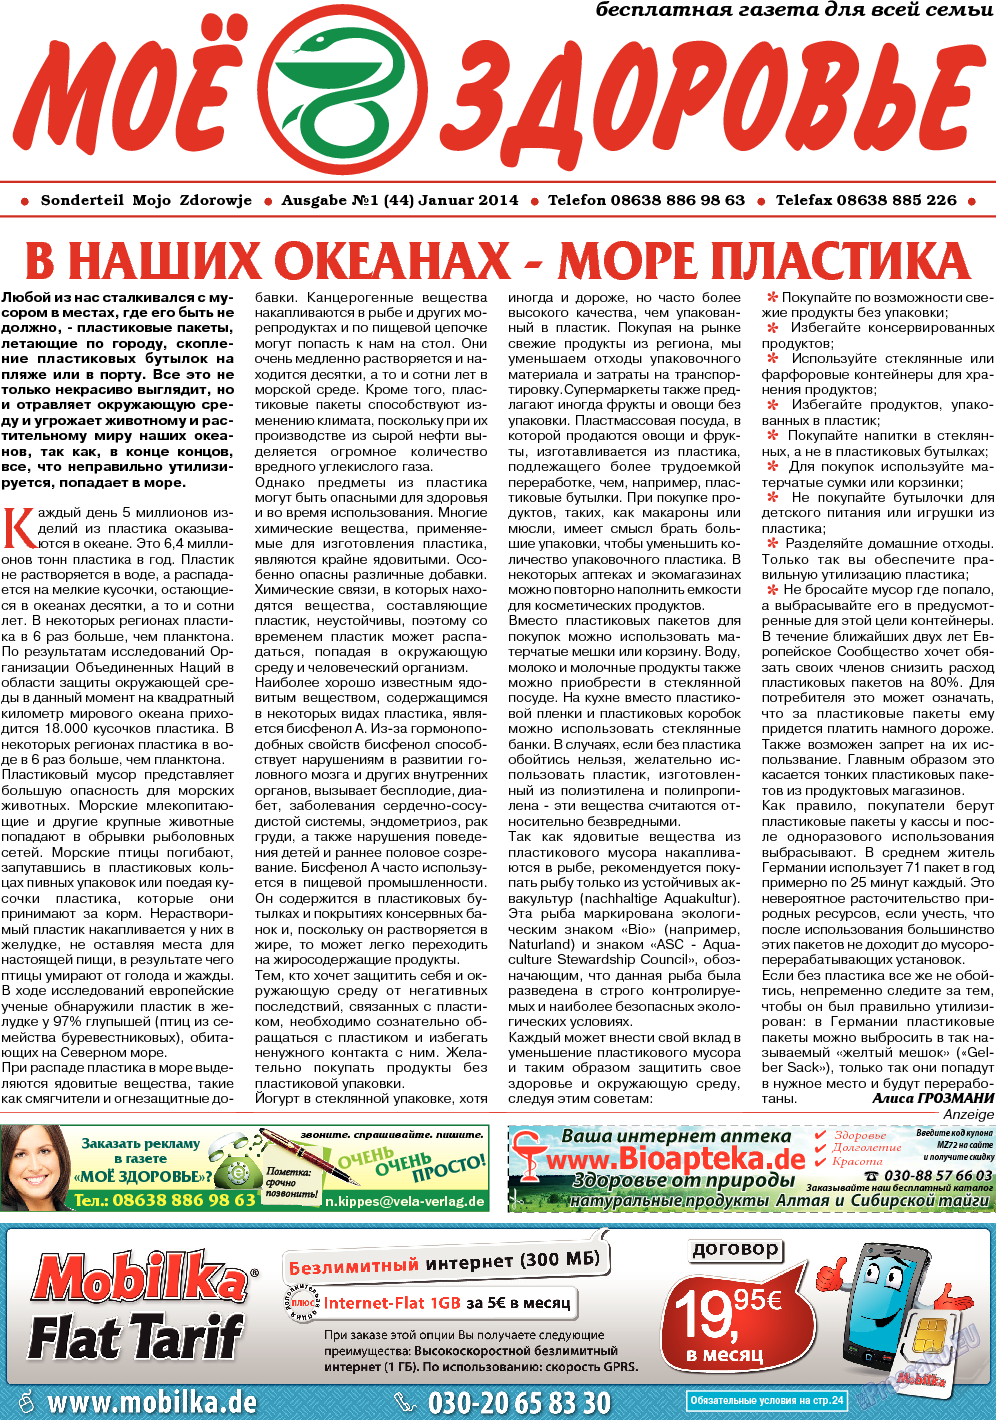 Кругозор (газета). 2014 год, номер 1, стр. 11